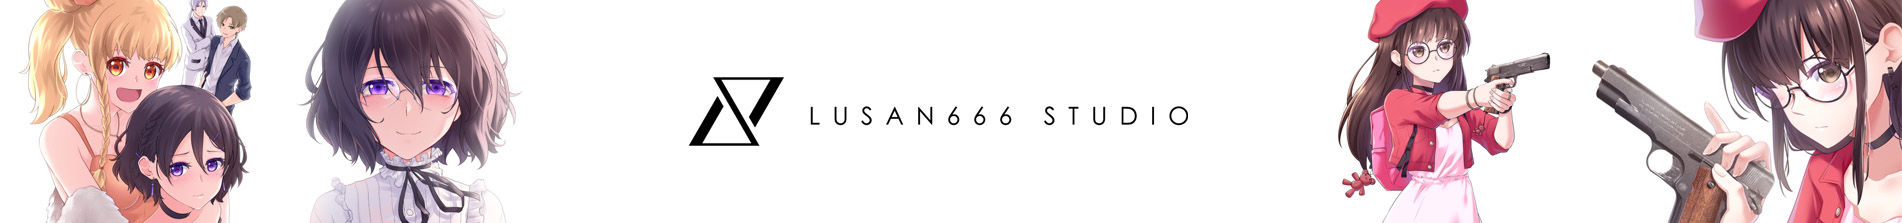 Lusan666 橫幅